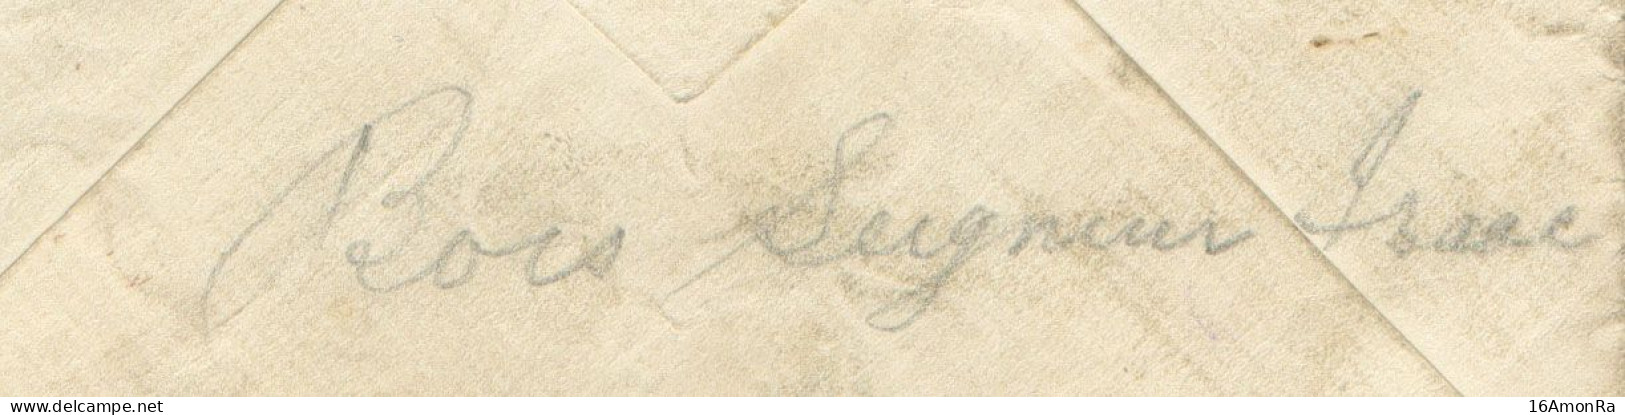 Enveloppe écrite Par Un Belge De Bois-Seigneur-Isaac (près Lillois Et Waterloo) Pour Compte D'un Prisonnier Britannique - Esercito Belga